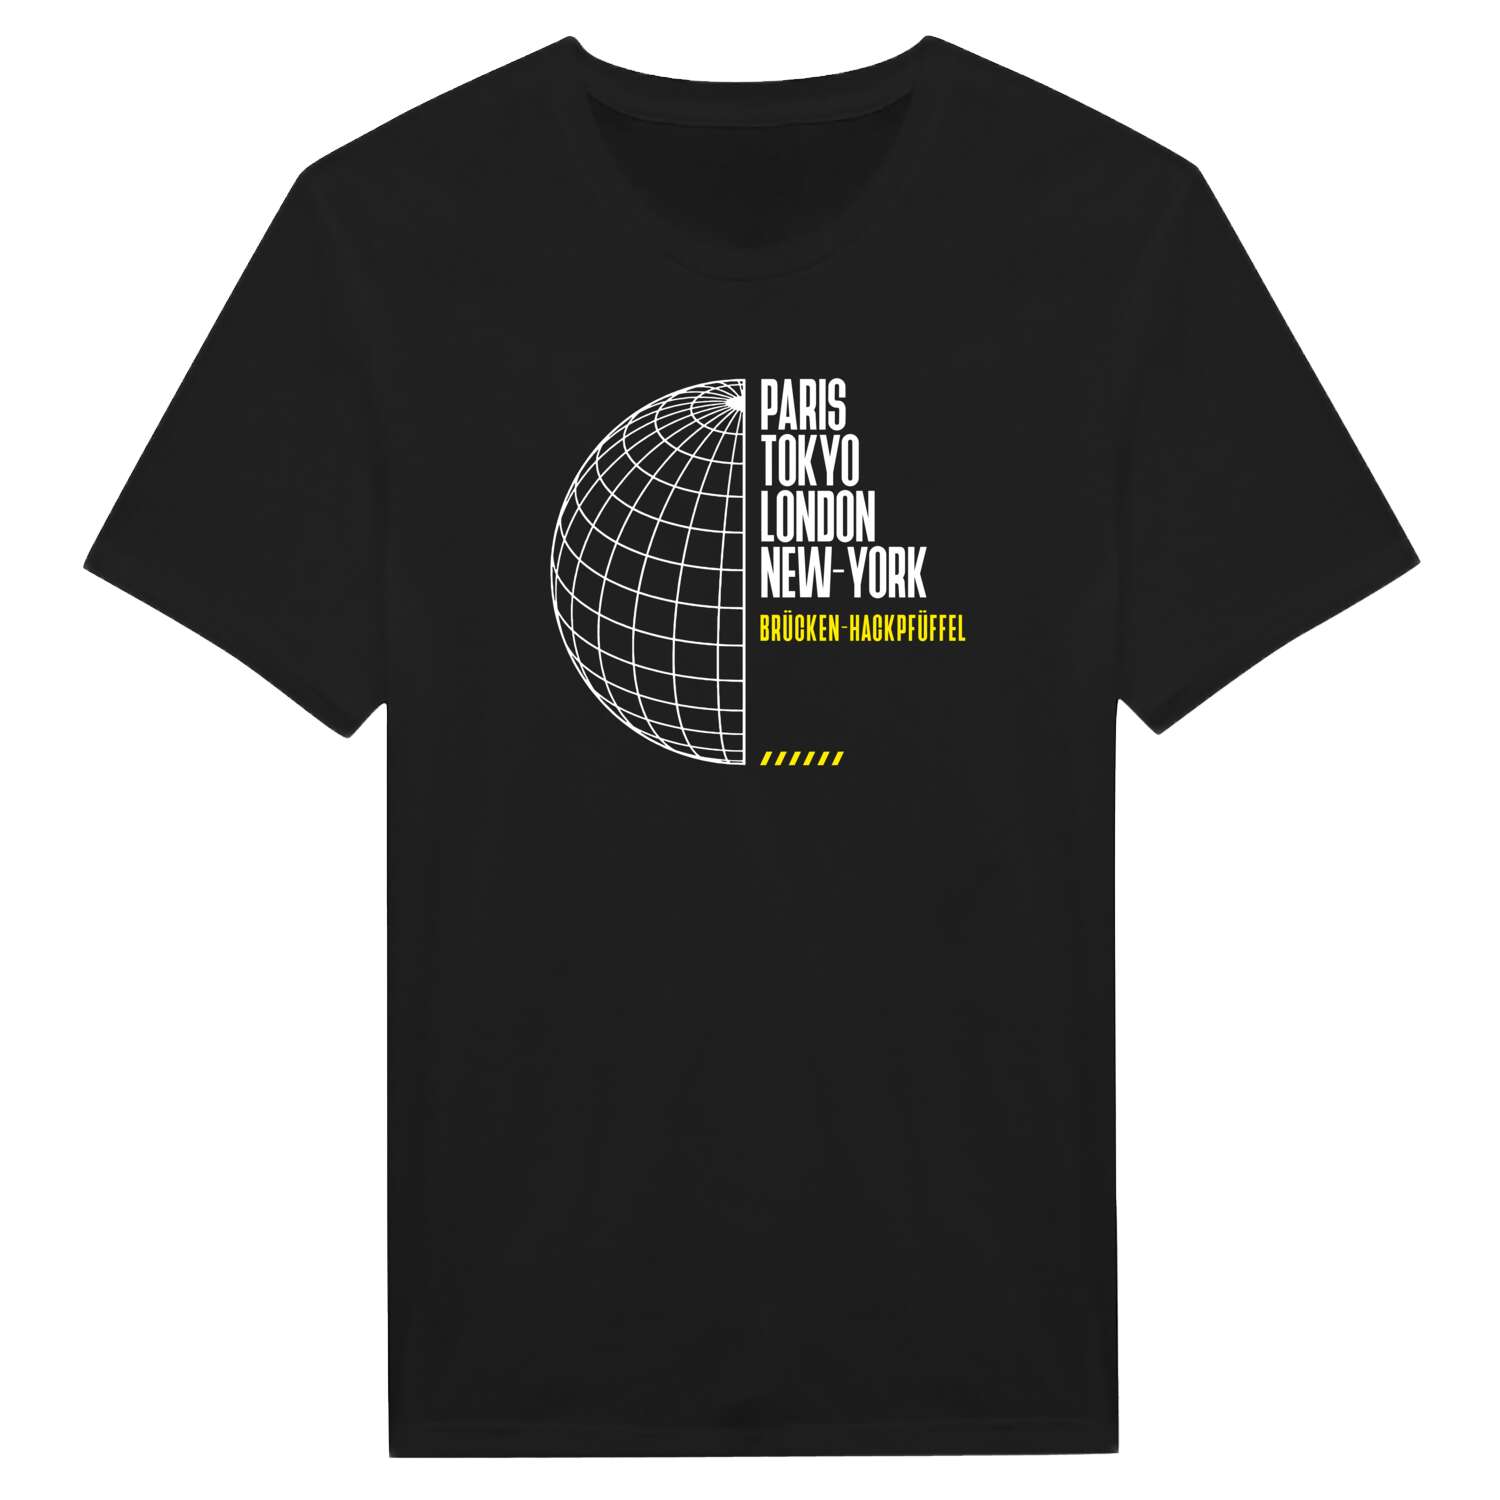 Brücken-Hackpfüffel T-Shirt »Paris Tokyo London«